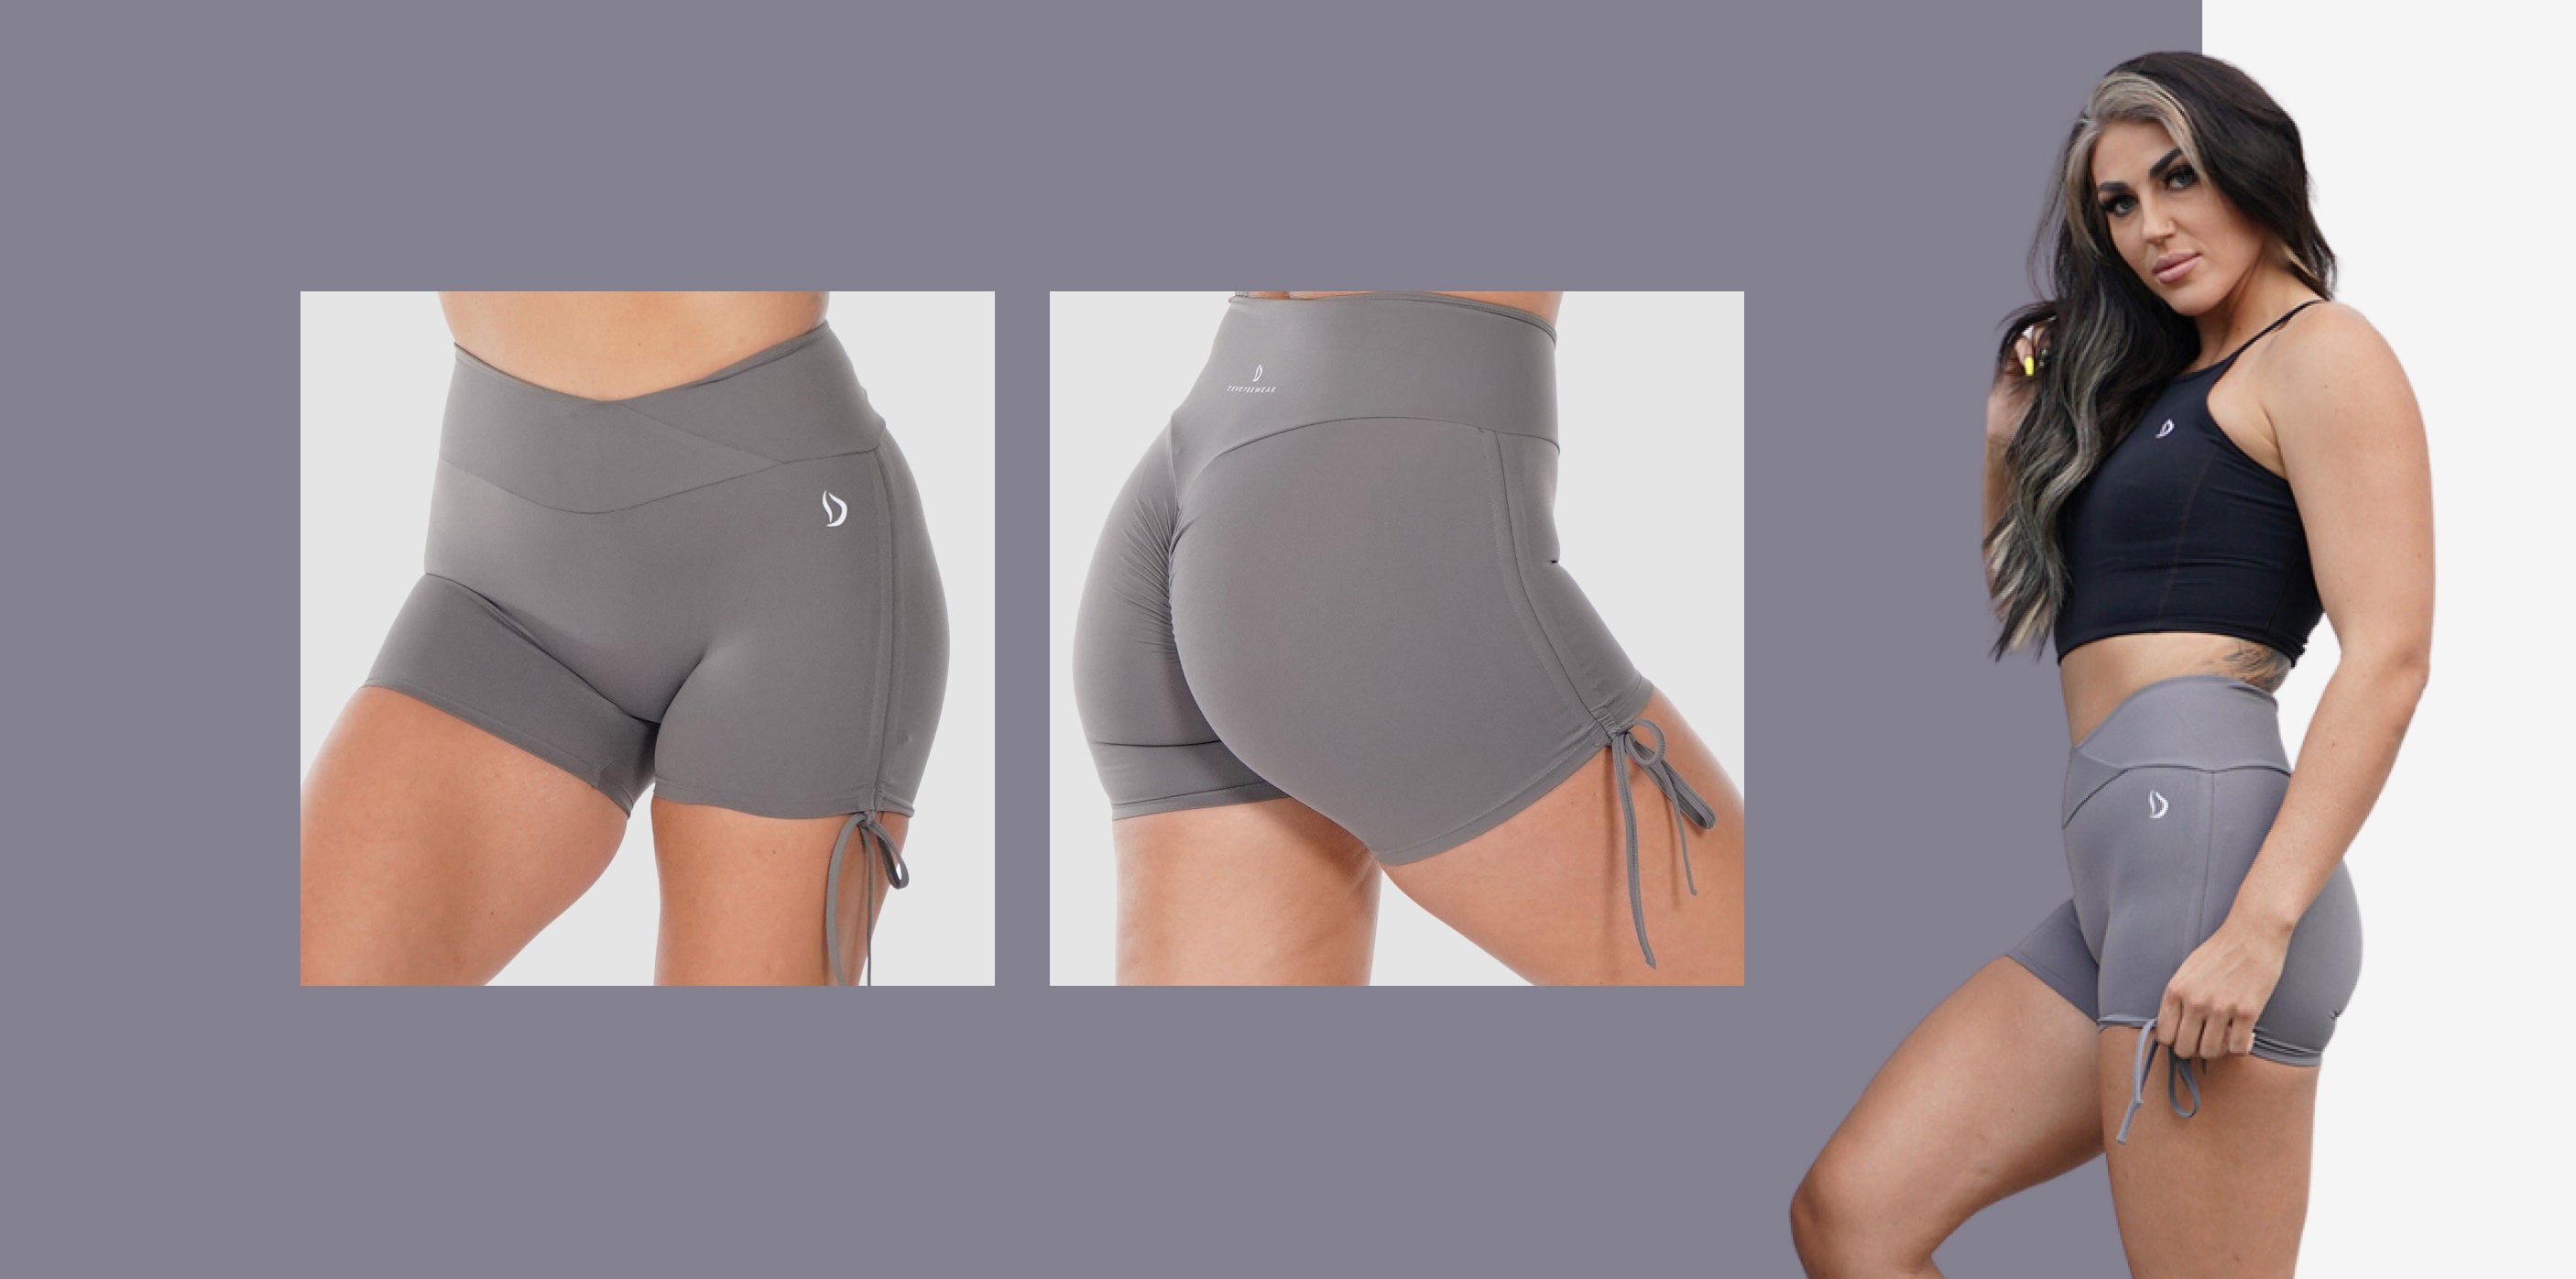 Les shorts fessiers Scrunch sont devenus incroyablement populaires pour une bonne raison. Le design froncé met en valeur la forme naturelle de vos fesses, offrant à la fois attrait esthétique et confort. Dans des shorts comme le Bumboost Scrunch Bum Short, le mécanisme de froissement ajoute un effet flatteur, ce qui les rend idéaux aussi bien pour les entraînements que pour les selfies !